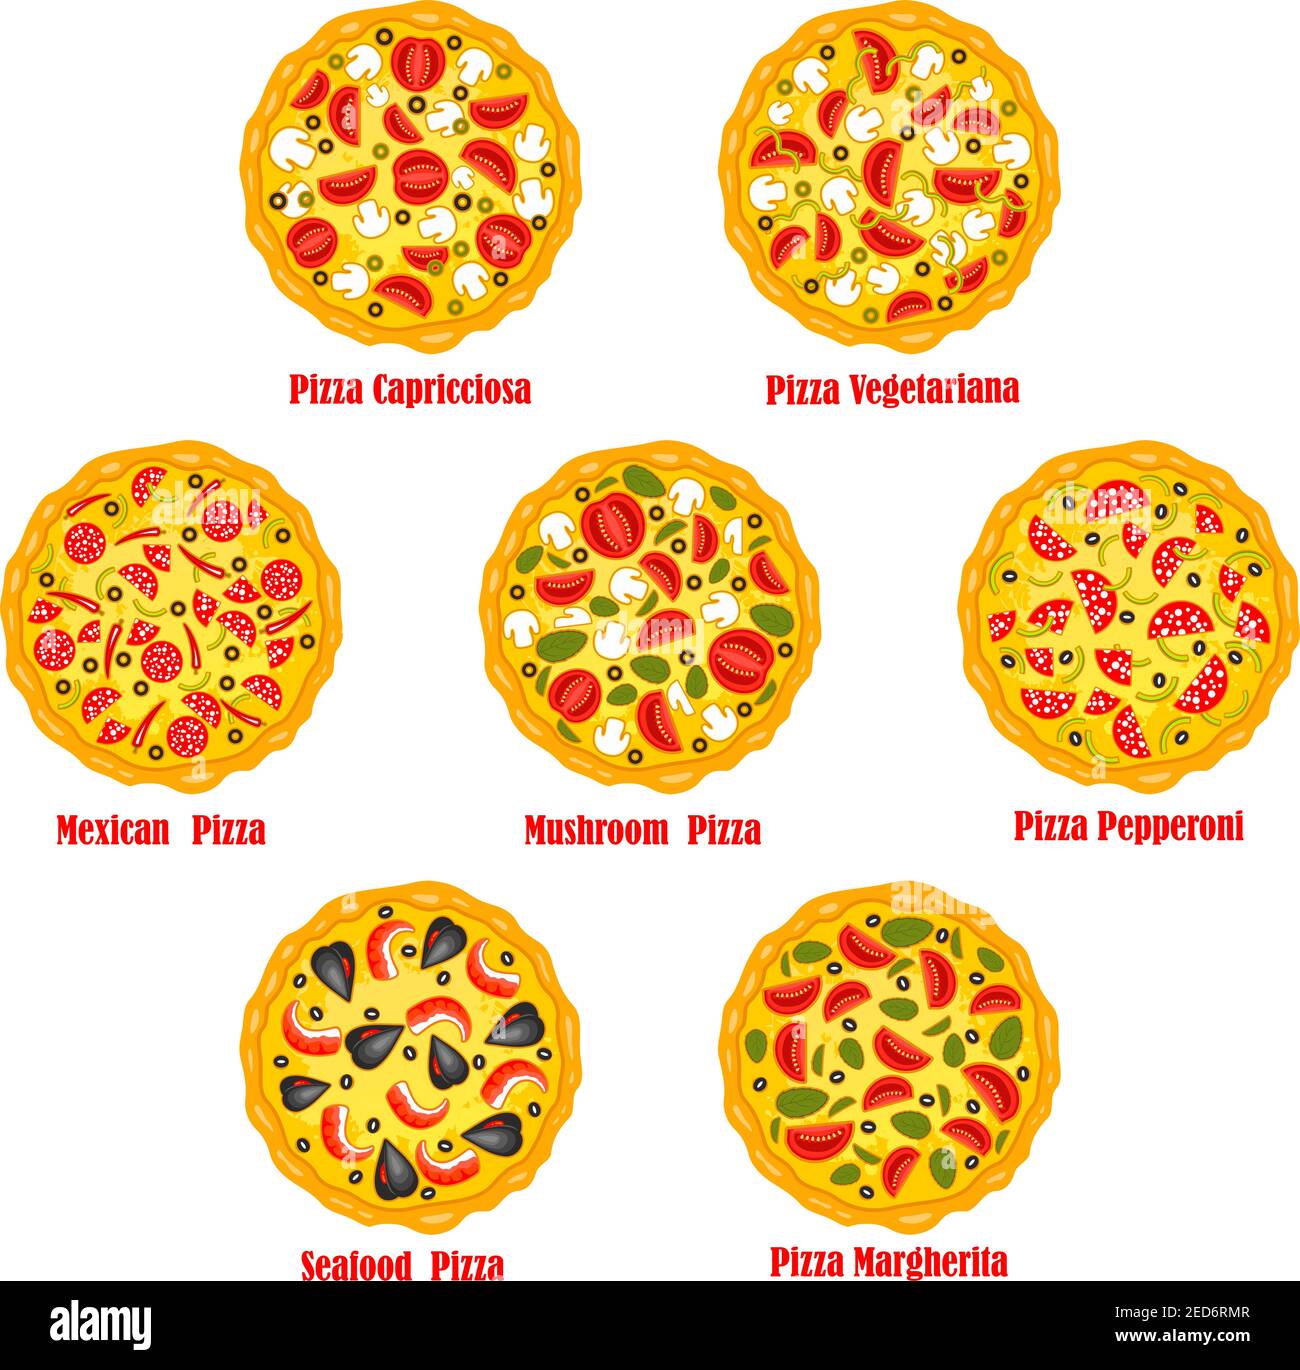 технологическая карта пицца пепперони фото 29